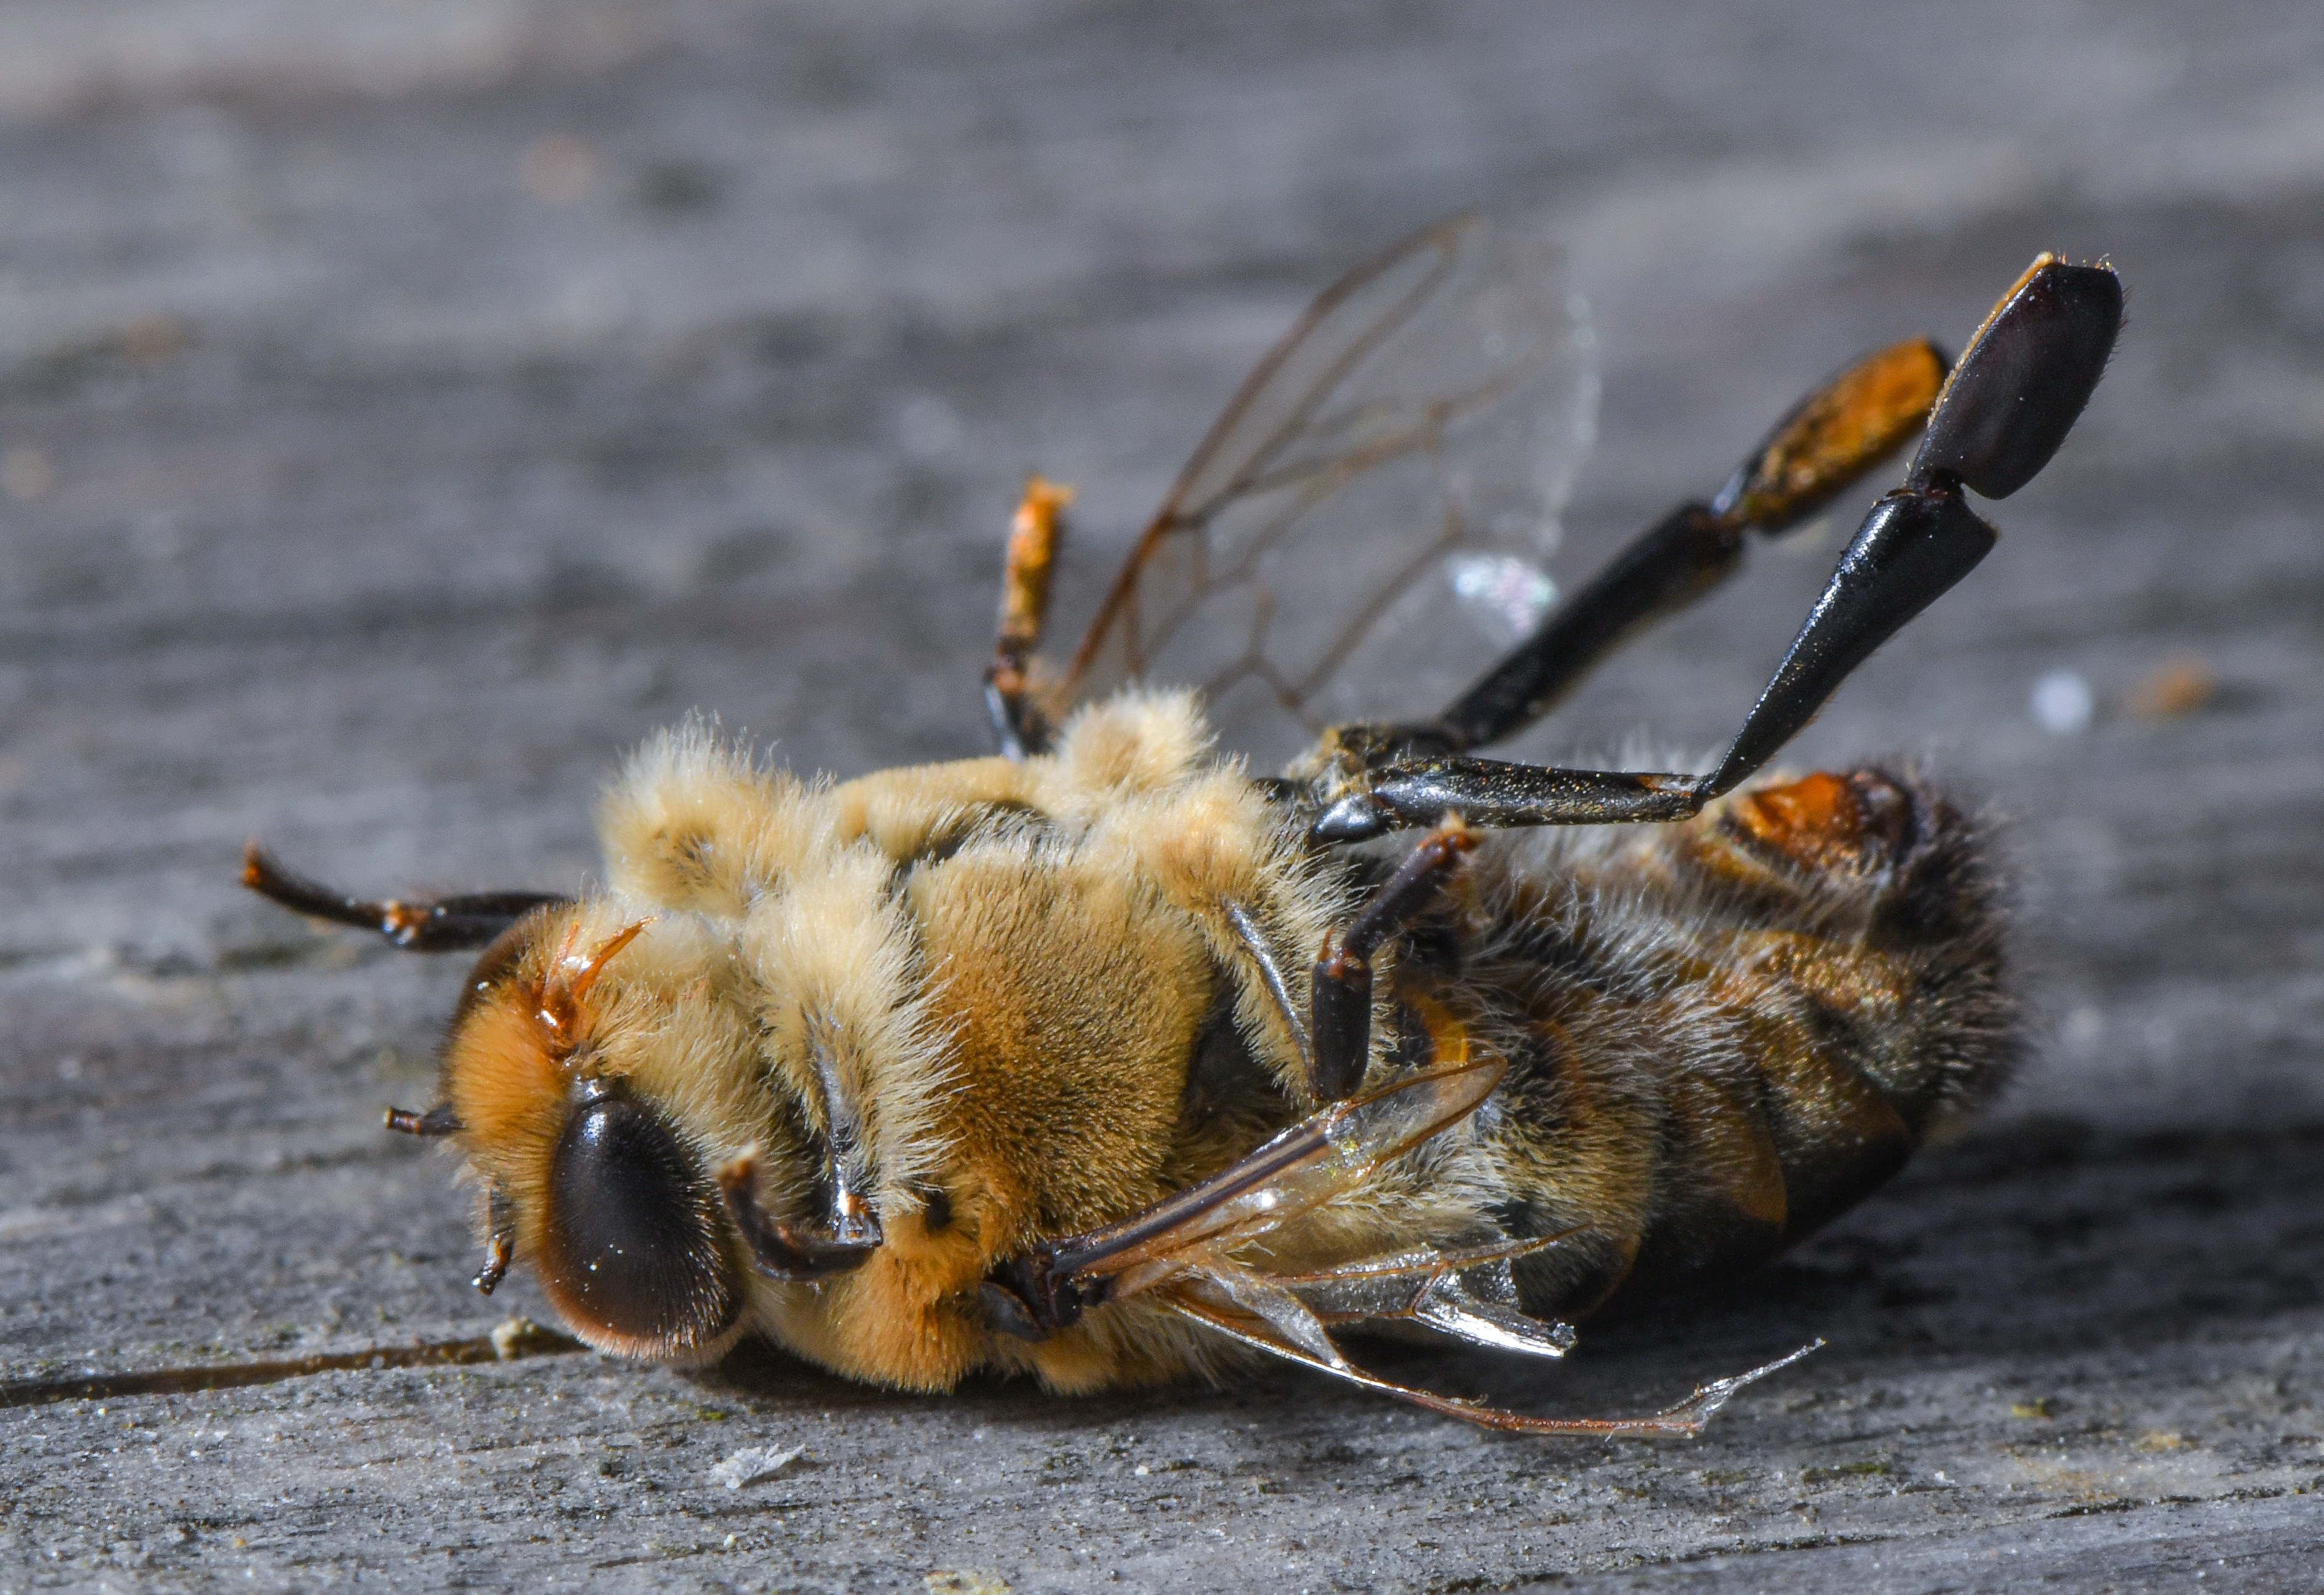 Lefeleződött a háziméhek élettartama az elmúlt 50 évben